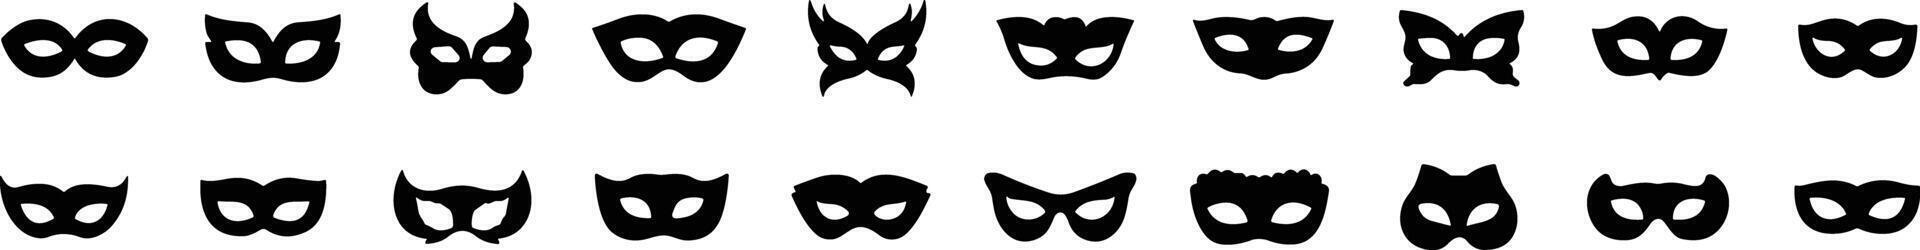 uppsättning av platt karneval masker silhuetter. enkel svart ikoner av maskerad masker, för fest, parad och karneval, för mardi gras och halloween. mask element. ansikte mask vektor